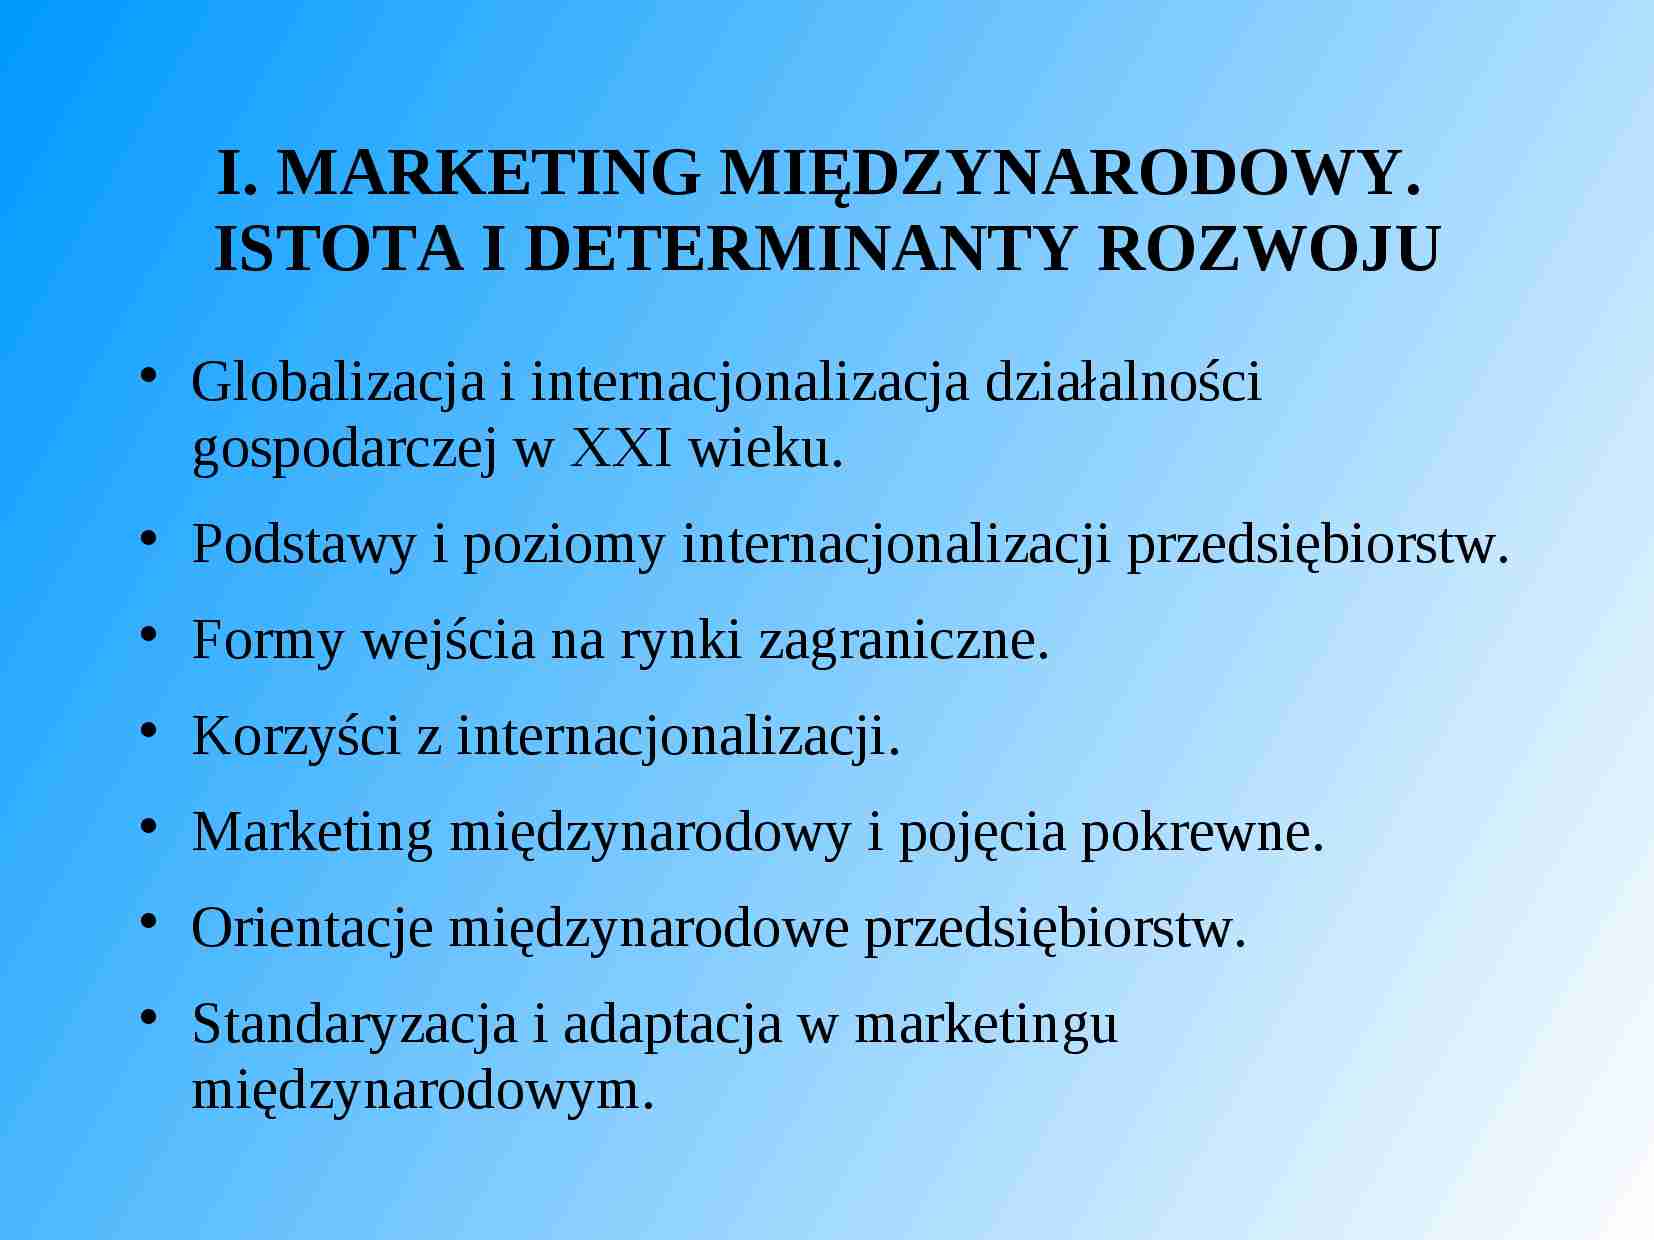 Marketing globalny - prezentacja - strona 1